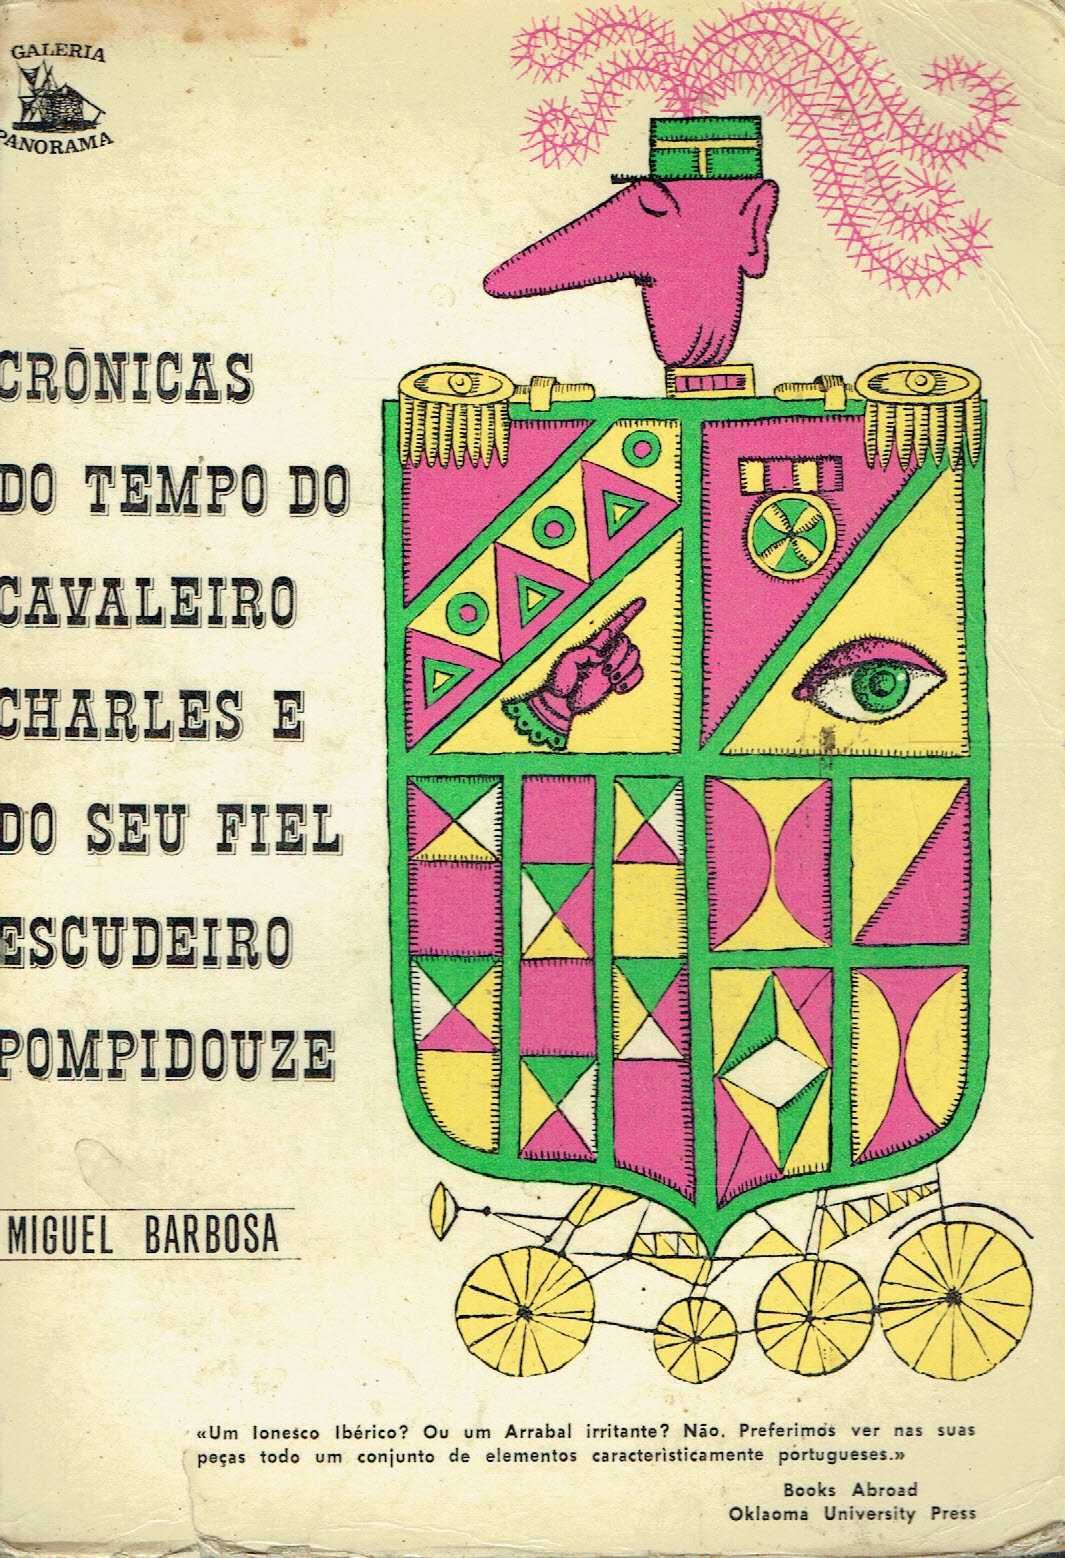 5004

Crónicas do Tempo do Cavaleiro Charle 
de Miguel Barbosa